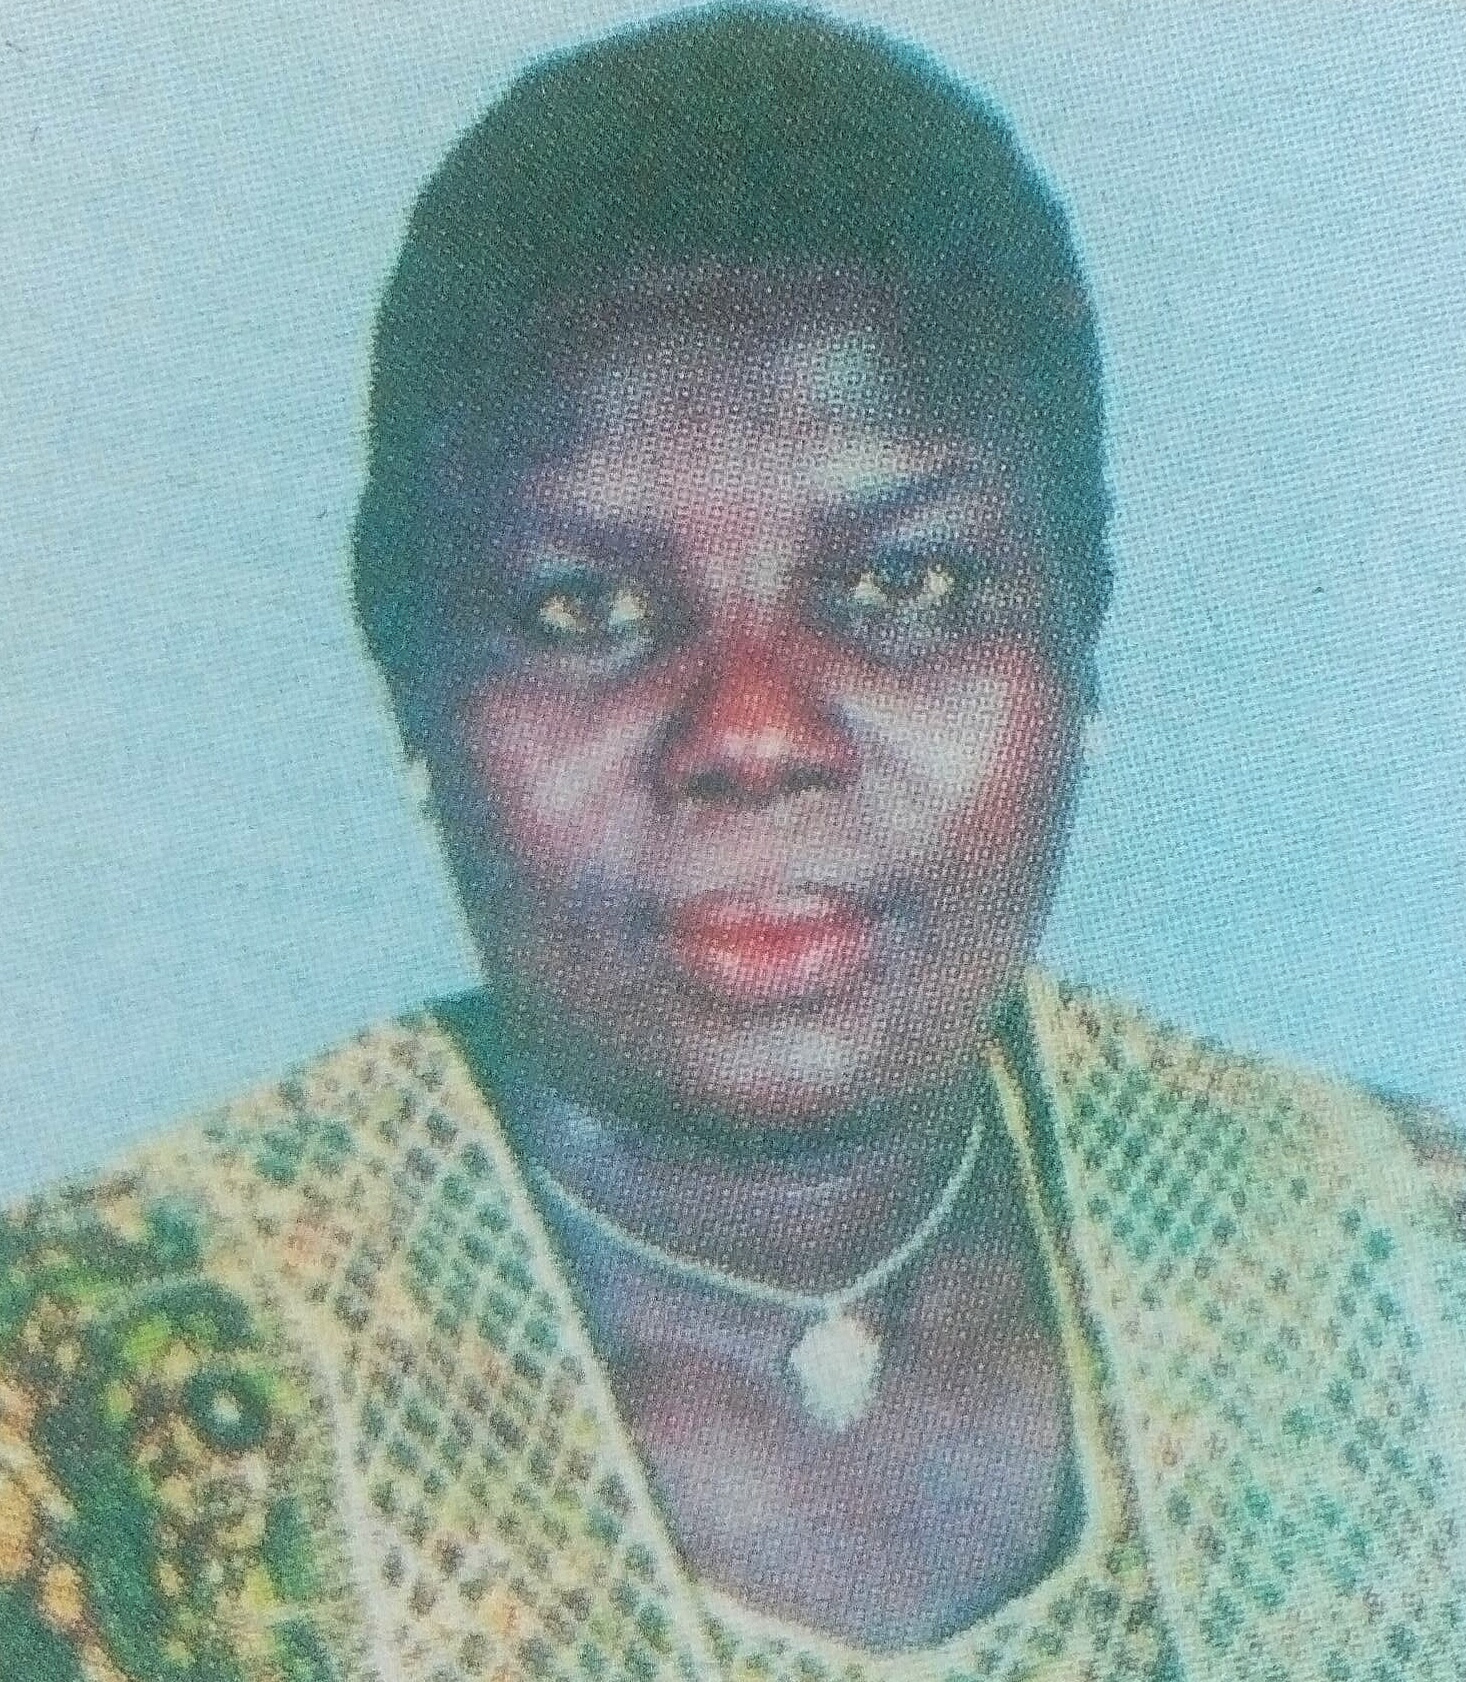 Obituary Image of Esther Nyamalo Kikuai Sunkuli